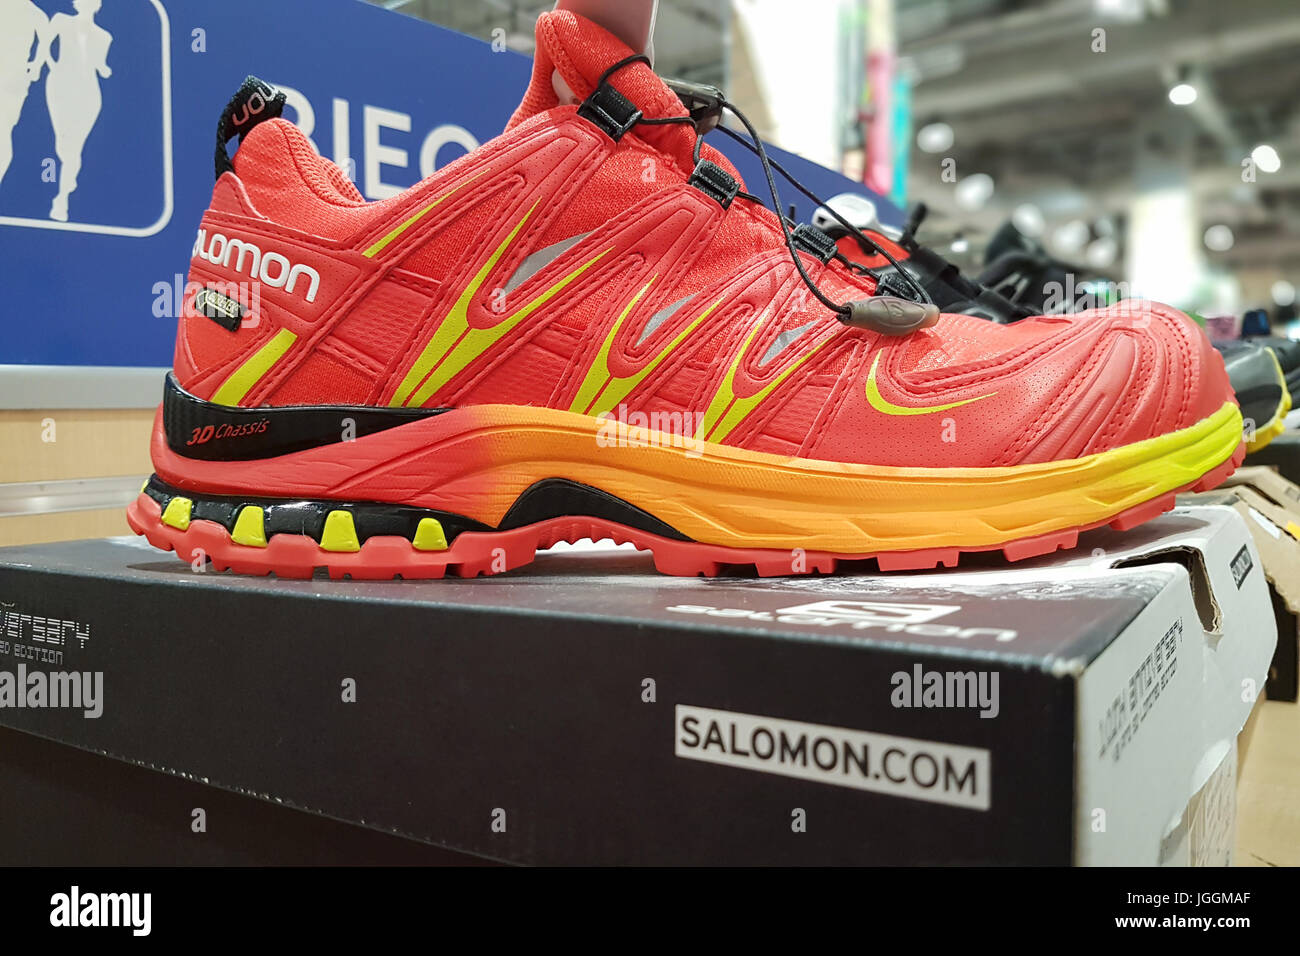 Nowy Sacz, Polonia - Julio 06, 2017: Salomon XA Pro 3D GTX zapatos  deportivos para la venta en la tienda de Martens. El Salomon Group es un  famoso hombre equipos deportivos Fotografía